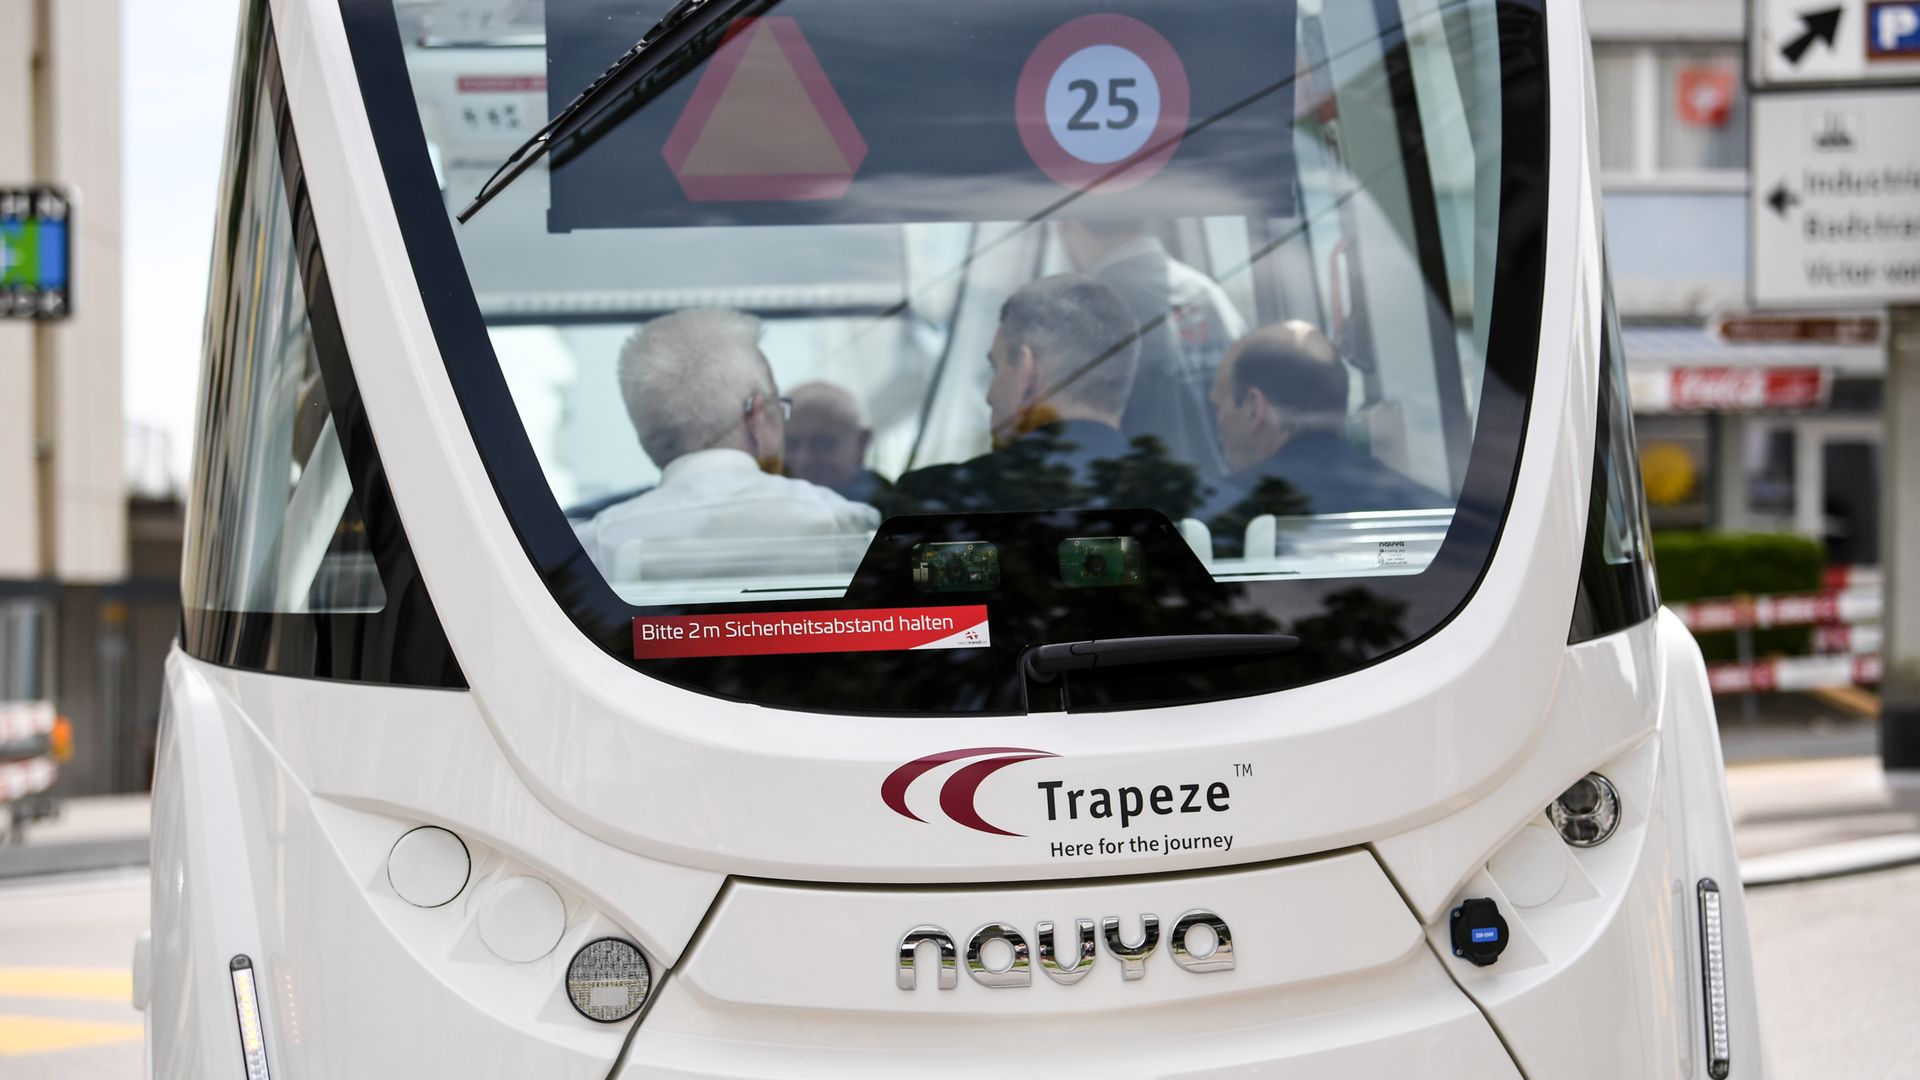 Christian Amsler and Winfried Kretschmann sit inside an autonomously driven bus of the Schaffhausen public transport during a test ride.